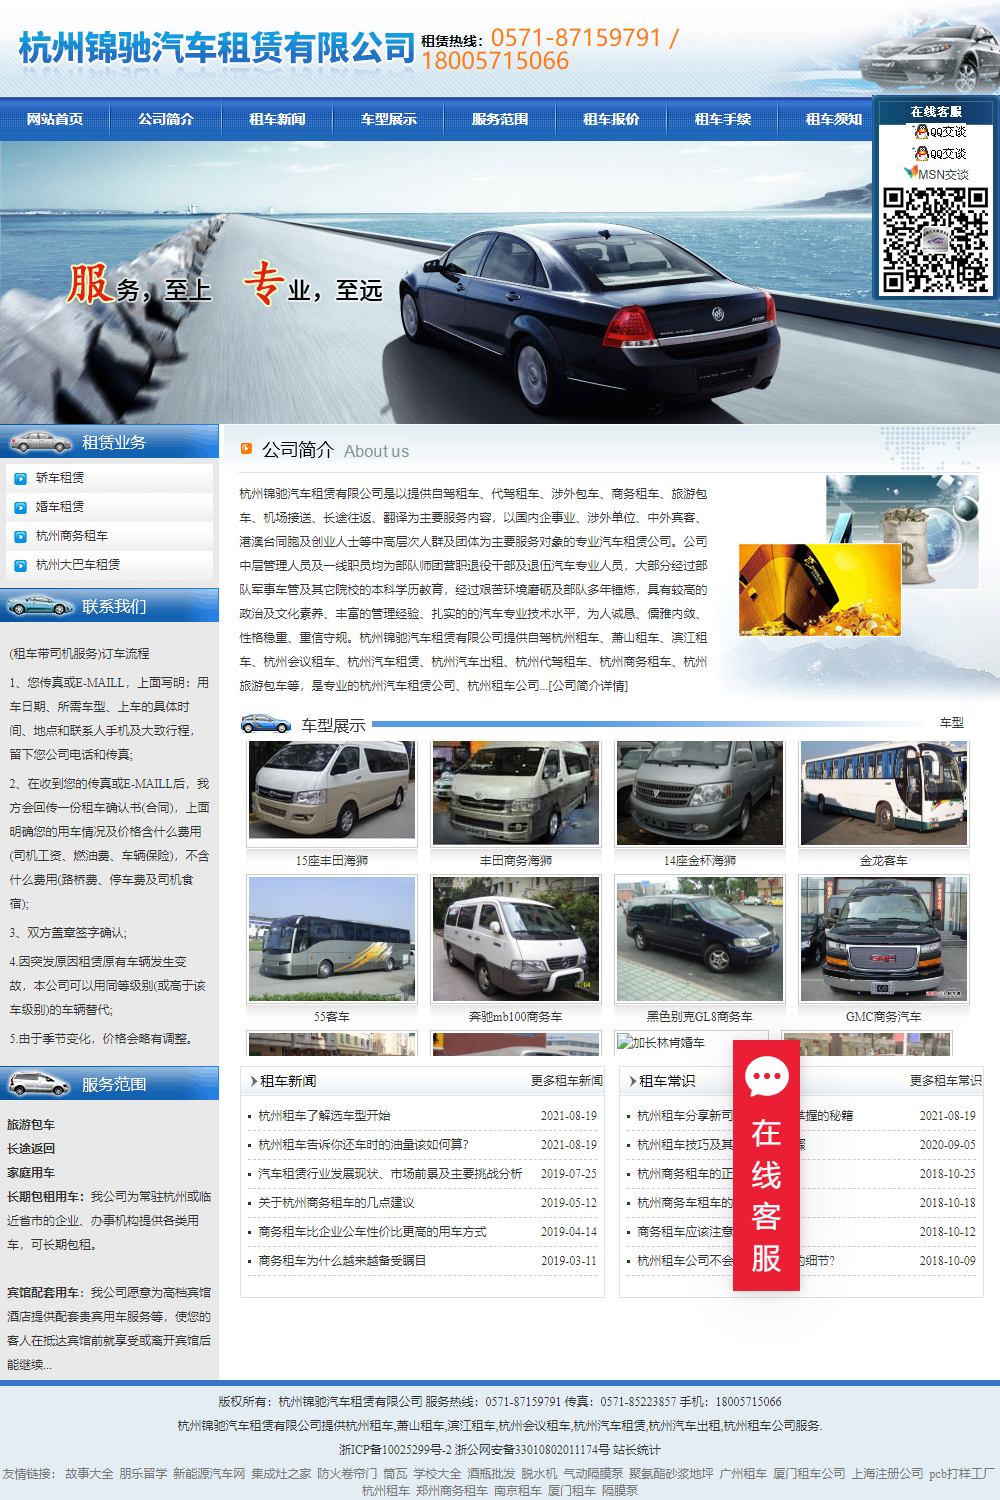 杭州锦驰汽车服务有限公司网站案例